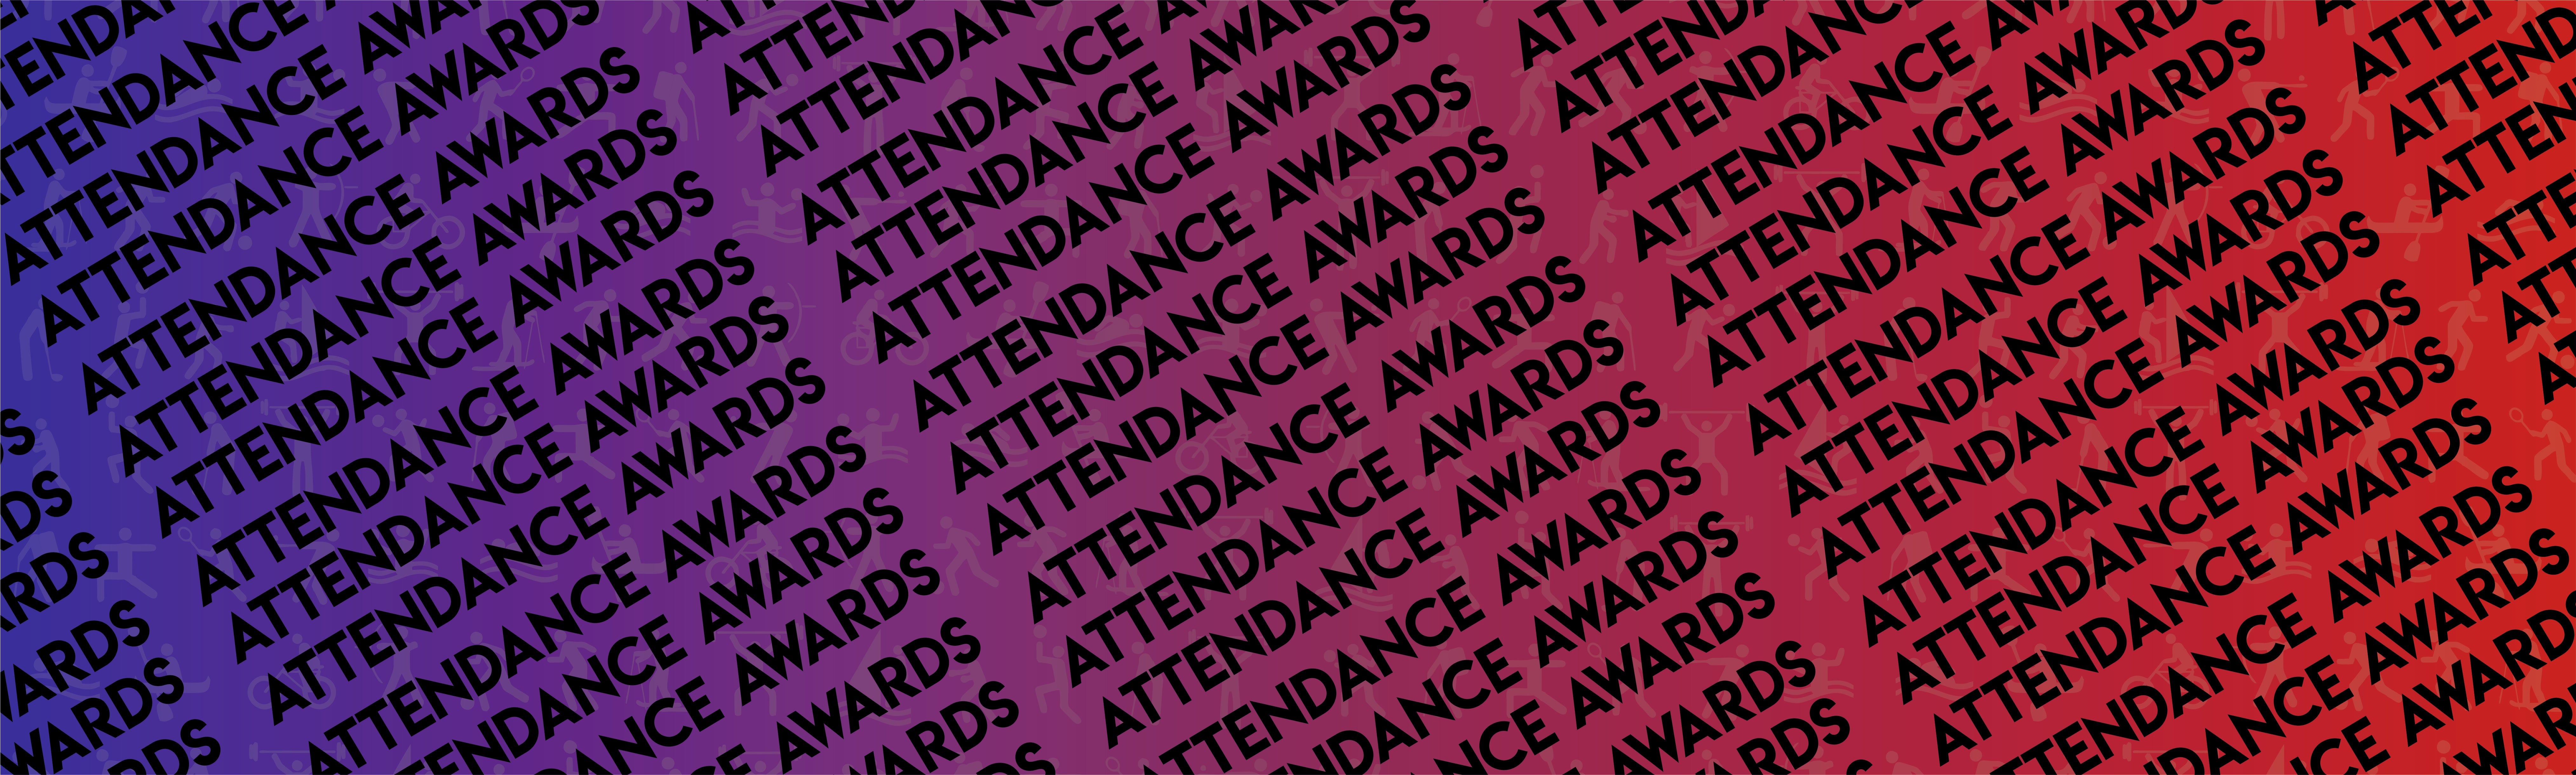 Attendance Awards